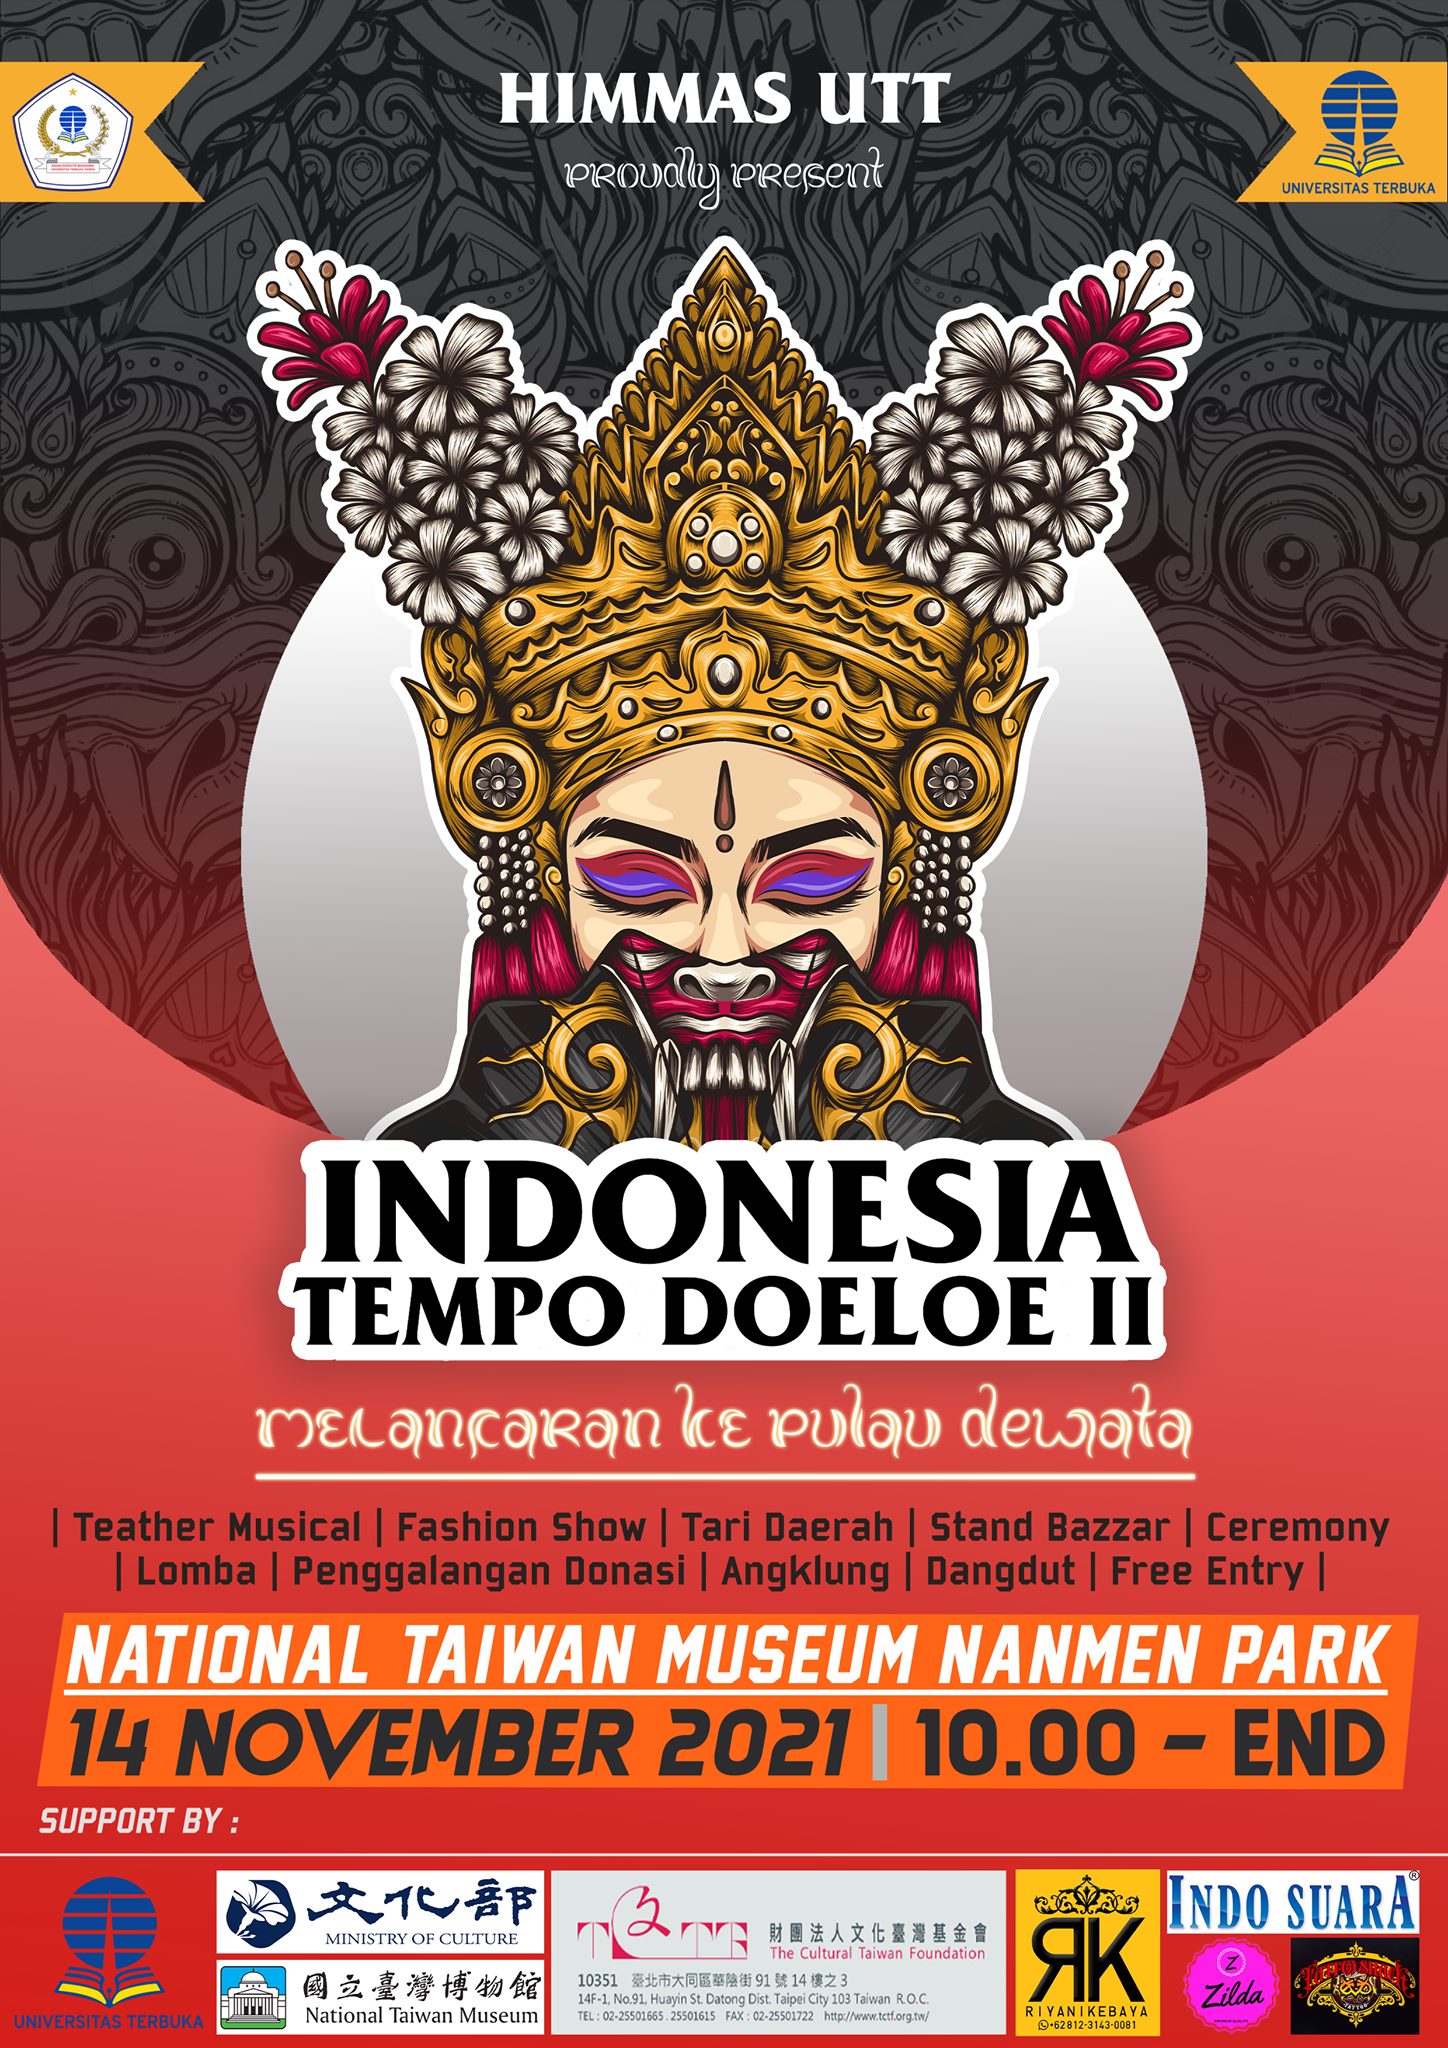 “เทศกาลวัฒนธรรมและศิลปะวันชาติอินโดนีเซีย” จะจัดขึ้นในวันที่ 14 พฤศจิกายน  ภาพจาก／พิพิธภัณฑ์แห่งชาติไต้หวัน